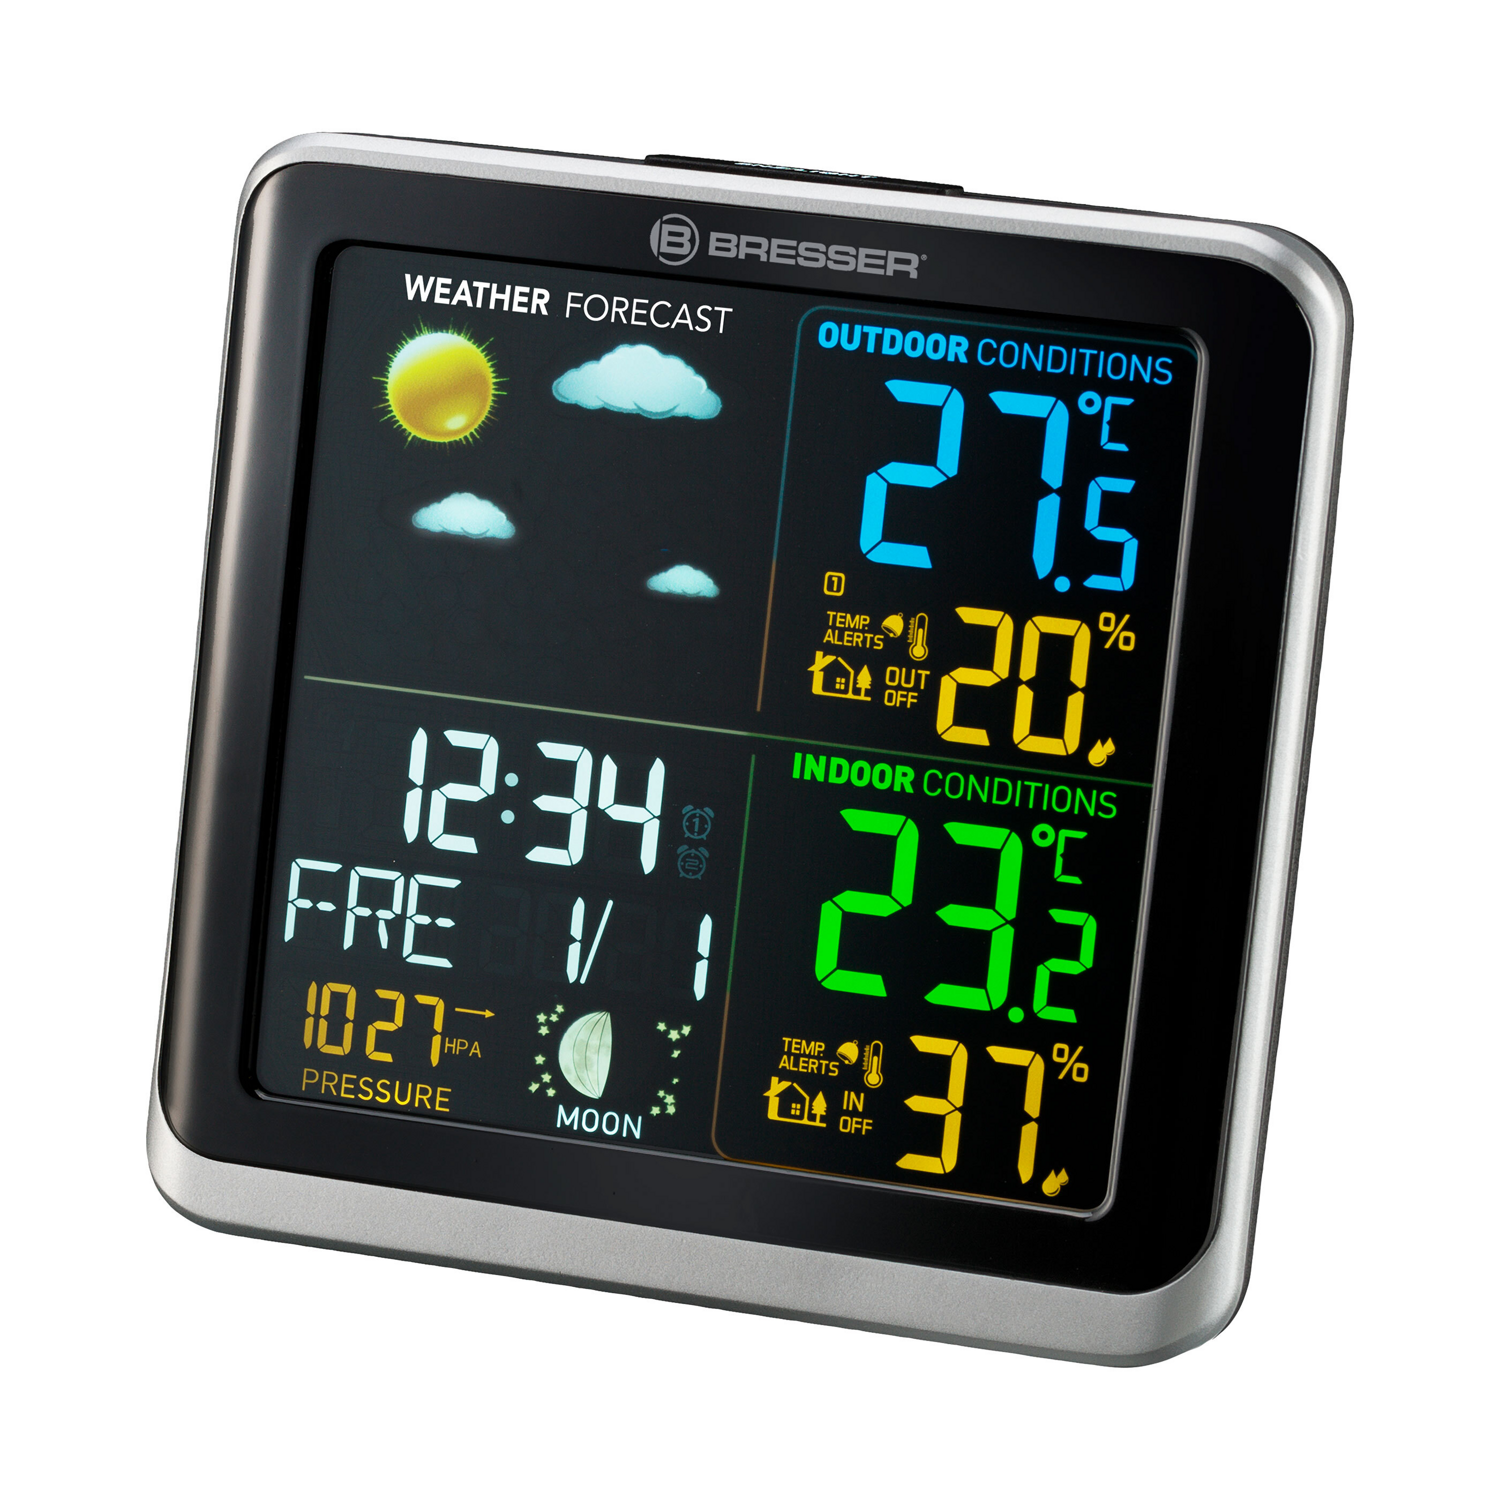 Wetterstation ClimaTemp TB mit LCD-Farbdisplay